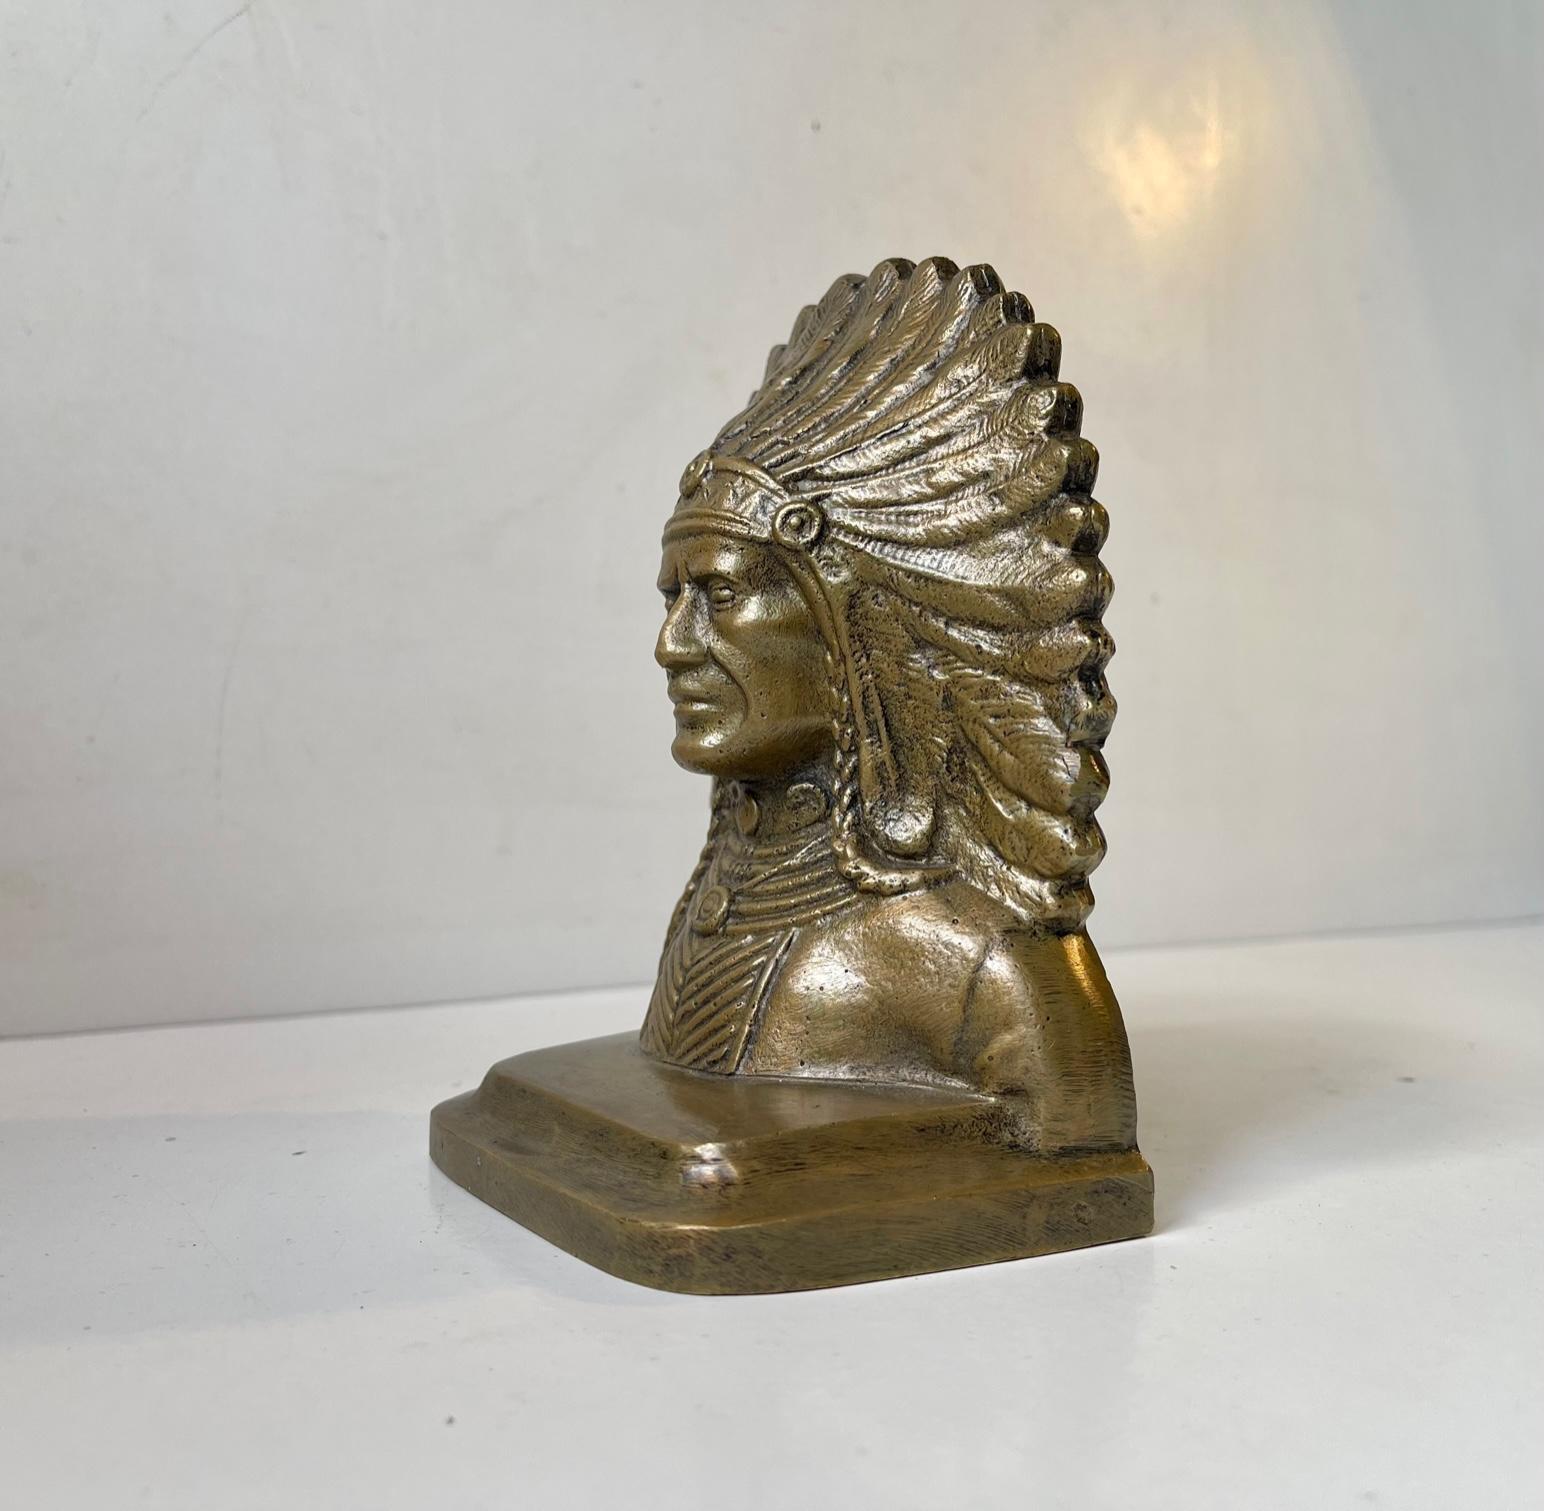 Serre-livres en bronze coulé orné représentant le chef indien en coiffure complète. Il a été fabriqué aux États-Unis ou en Europe continentale vers 1930-60. Mesures : H : 14,5 cm, L : 12 cm, P : 8 cm.